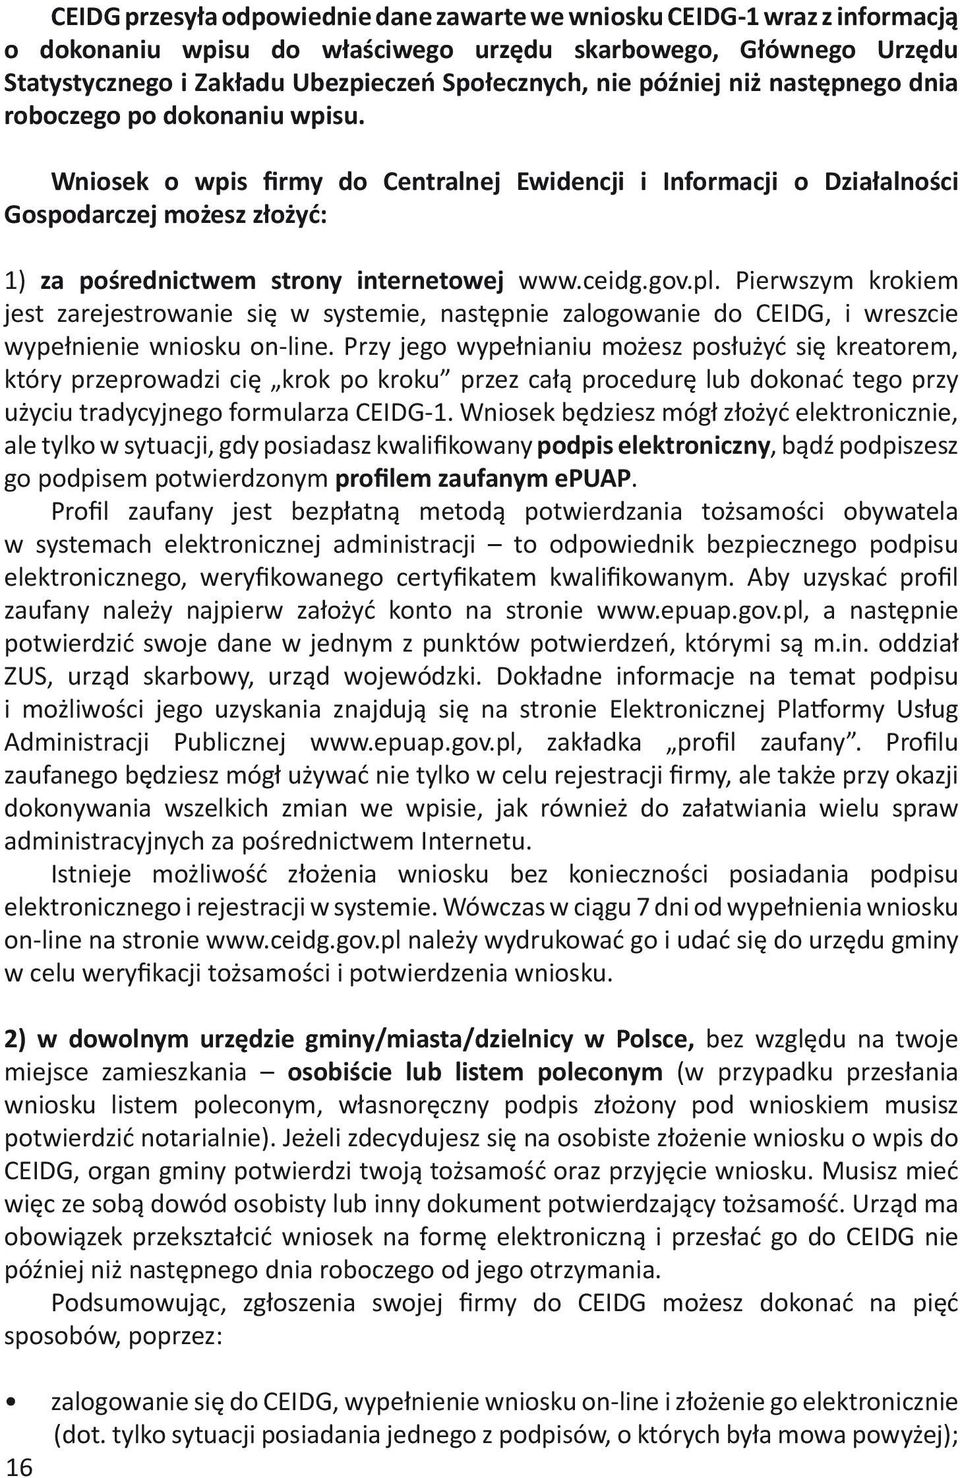 Wniosek o wpis firmy do Centralnej Ewidencji i Informacji o Działalności Gospodarczej możesz złożyć: 1) za pośrednictwem strony internetowej www.ceidg.gov.pl.